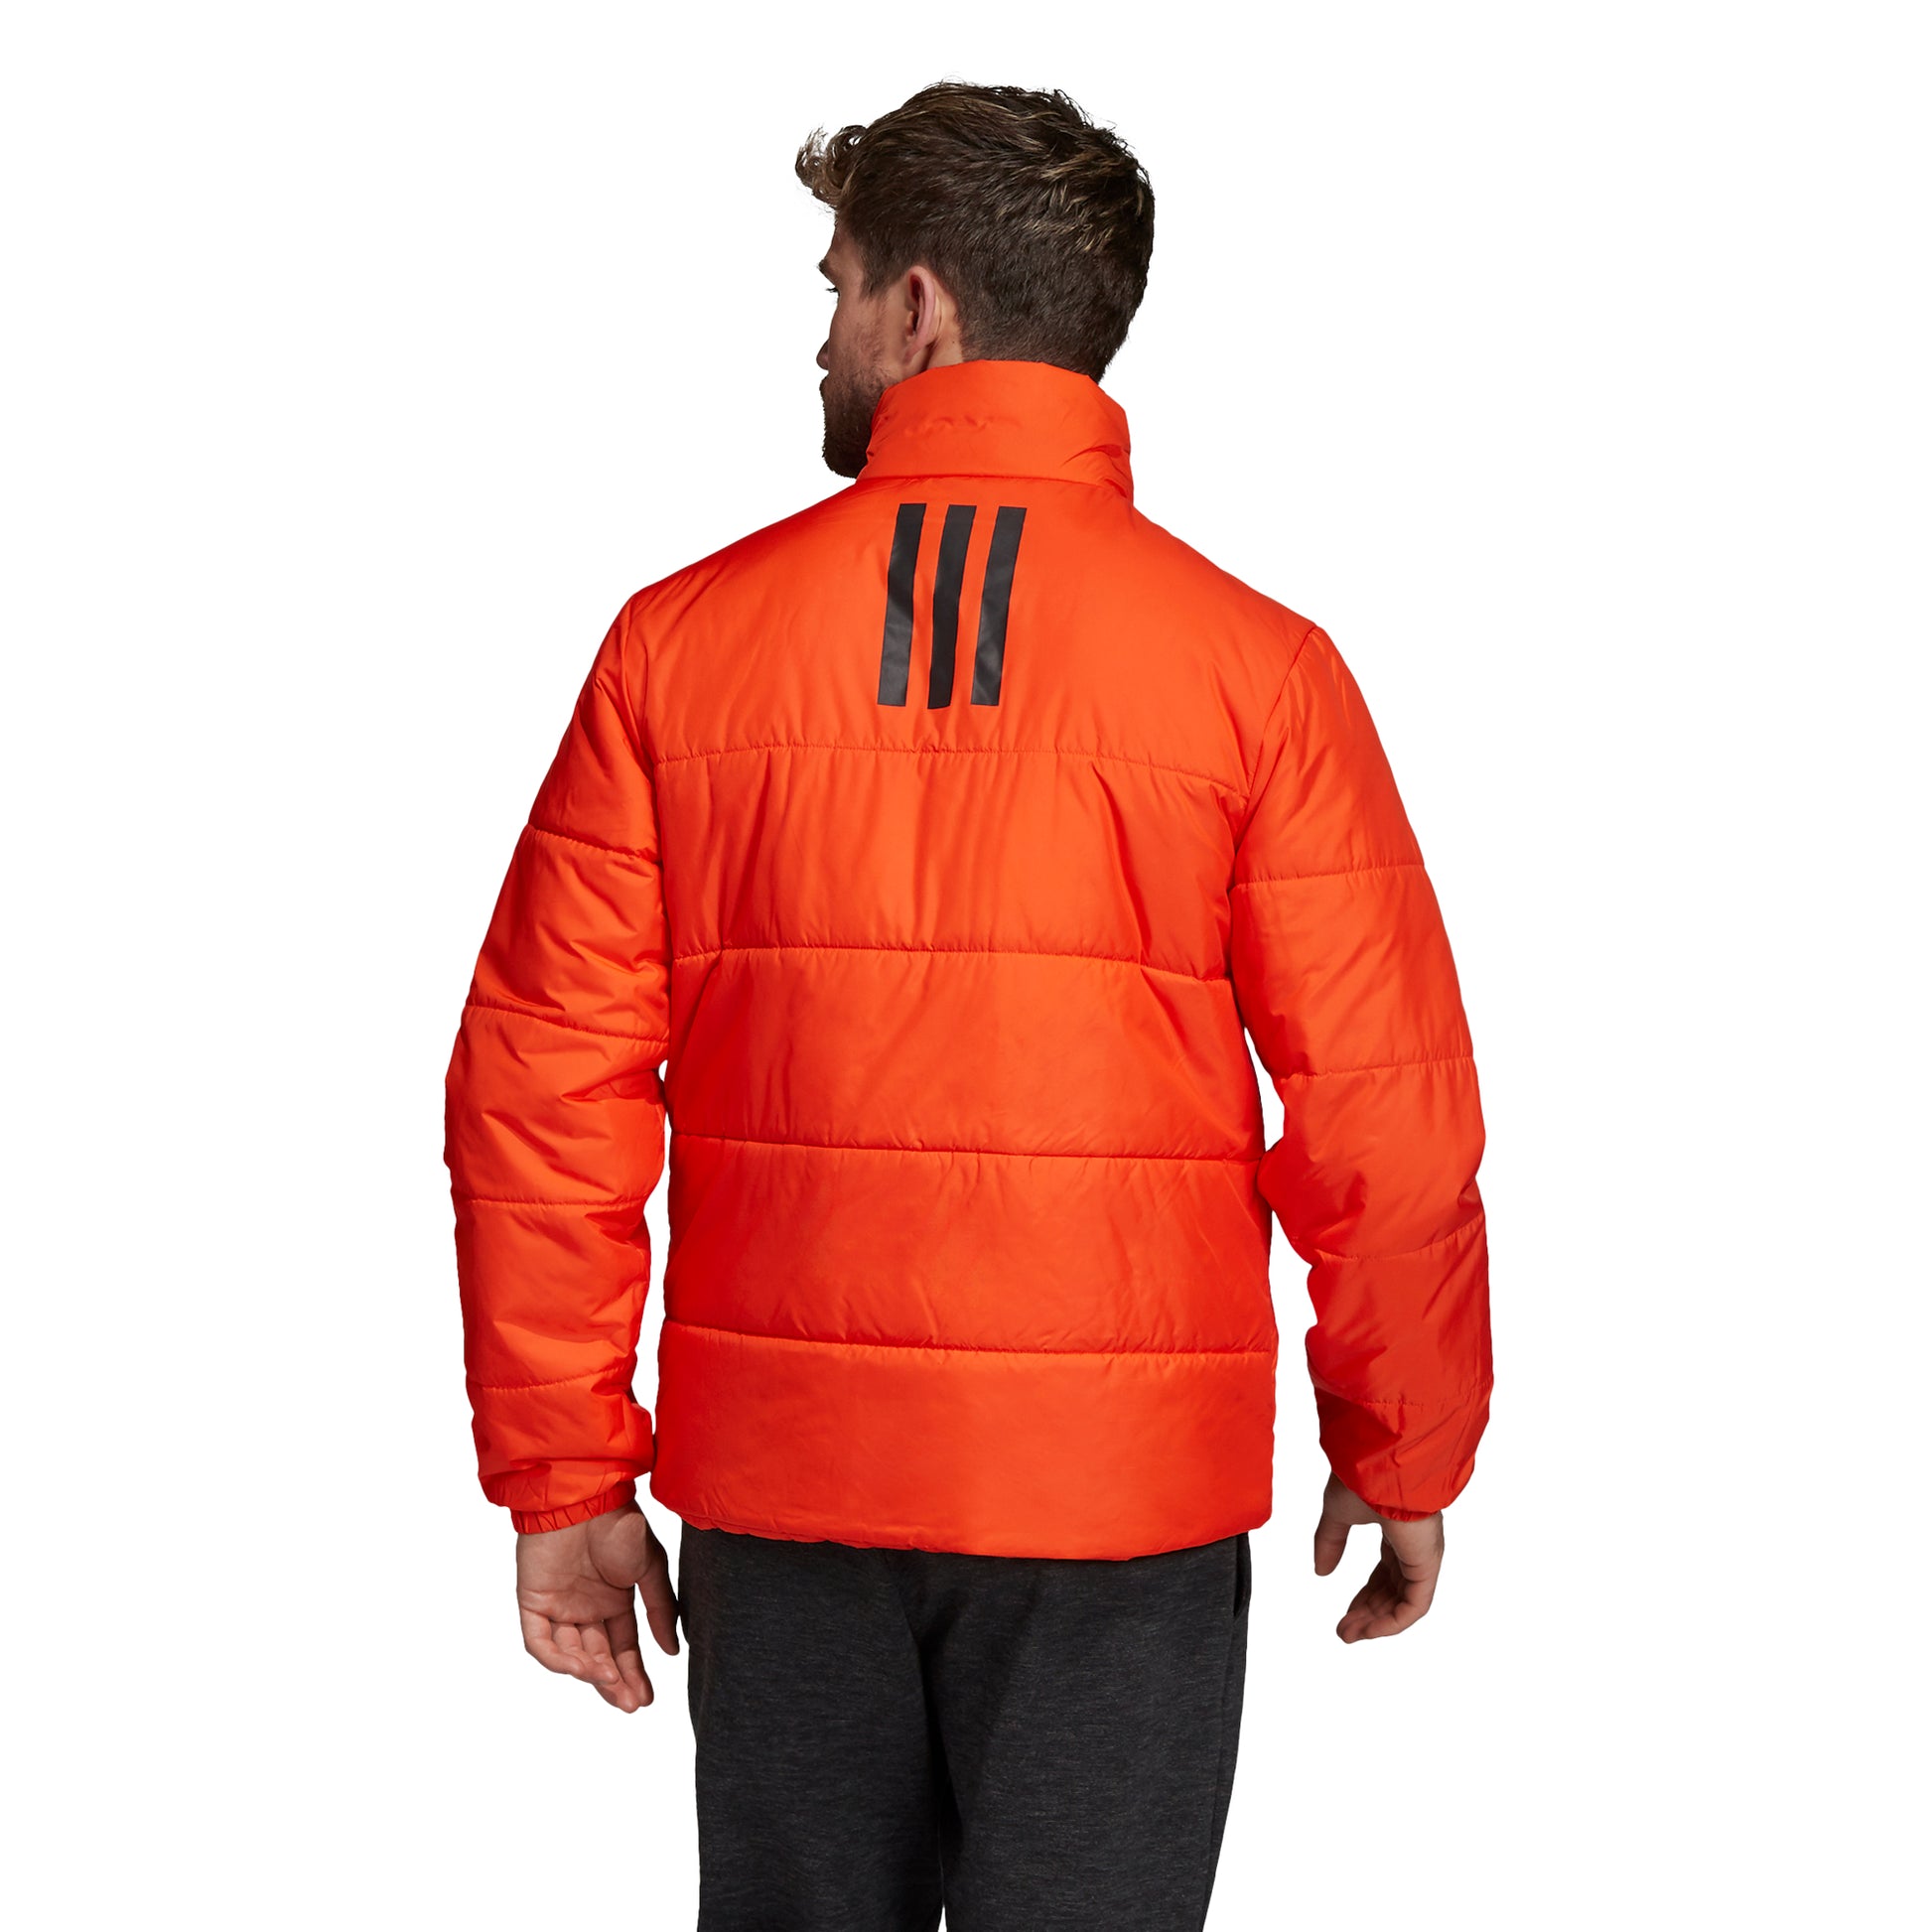 adidas Men's Jacket 3-Stripes Insulated Winter - Orange DZ1401 - VuTennis